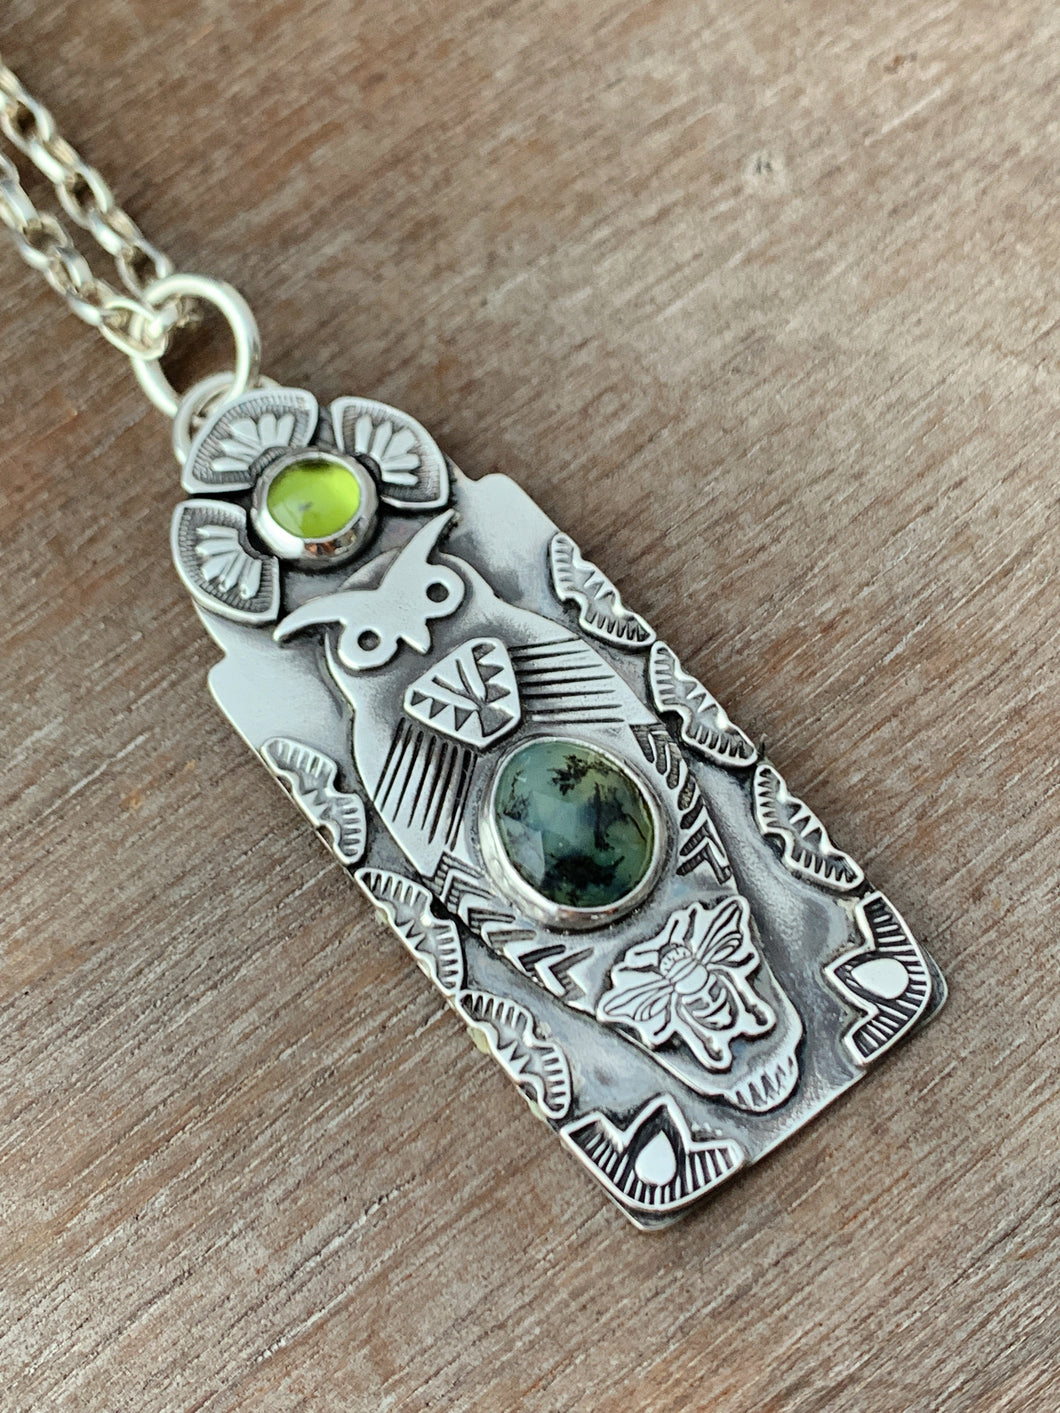 Owl pendant #7 - Peruvian Opal and Peridot